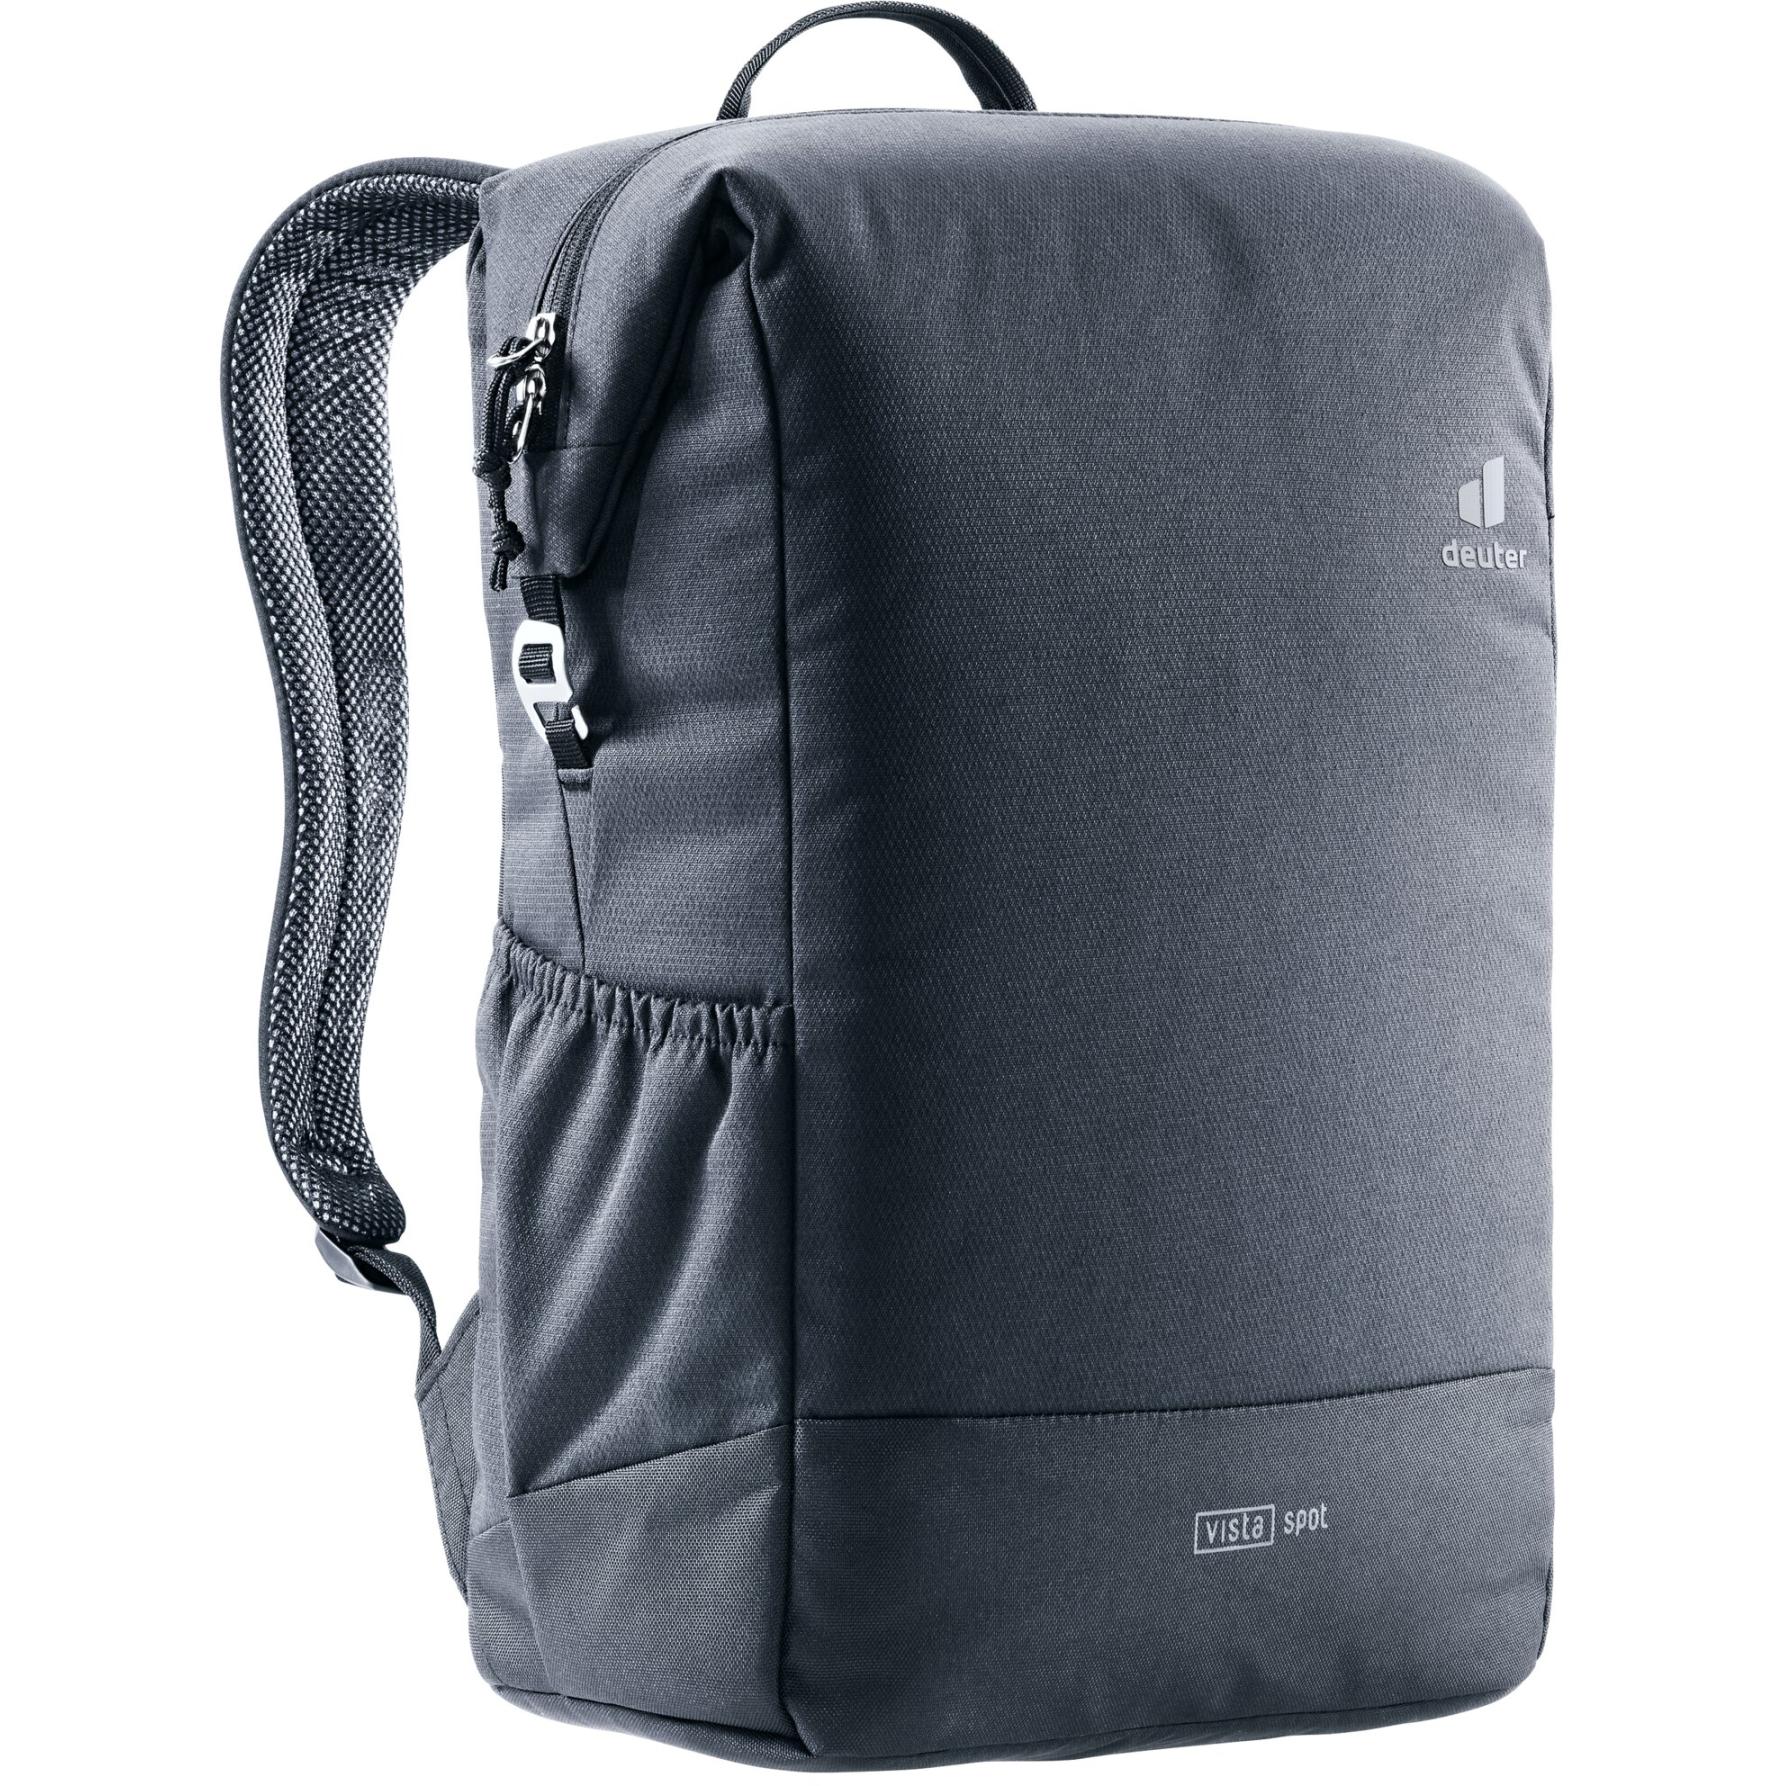 Picture of Deuter Vista Spot Backpack 18L - black